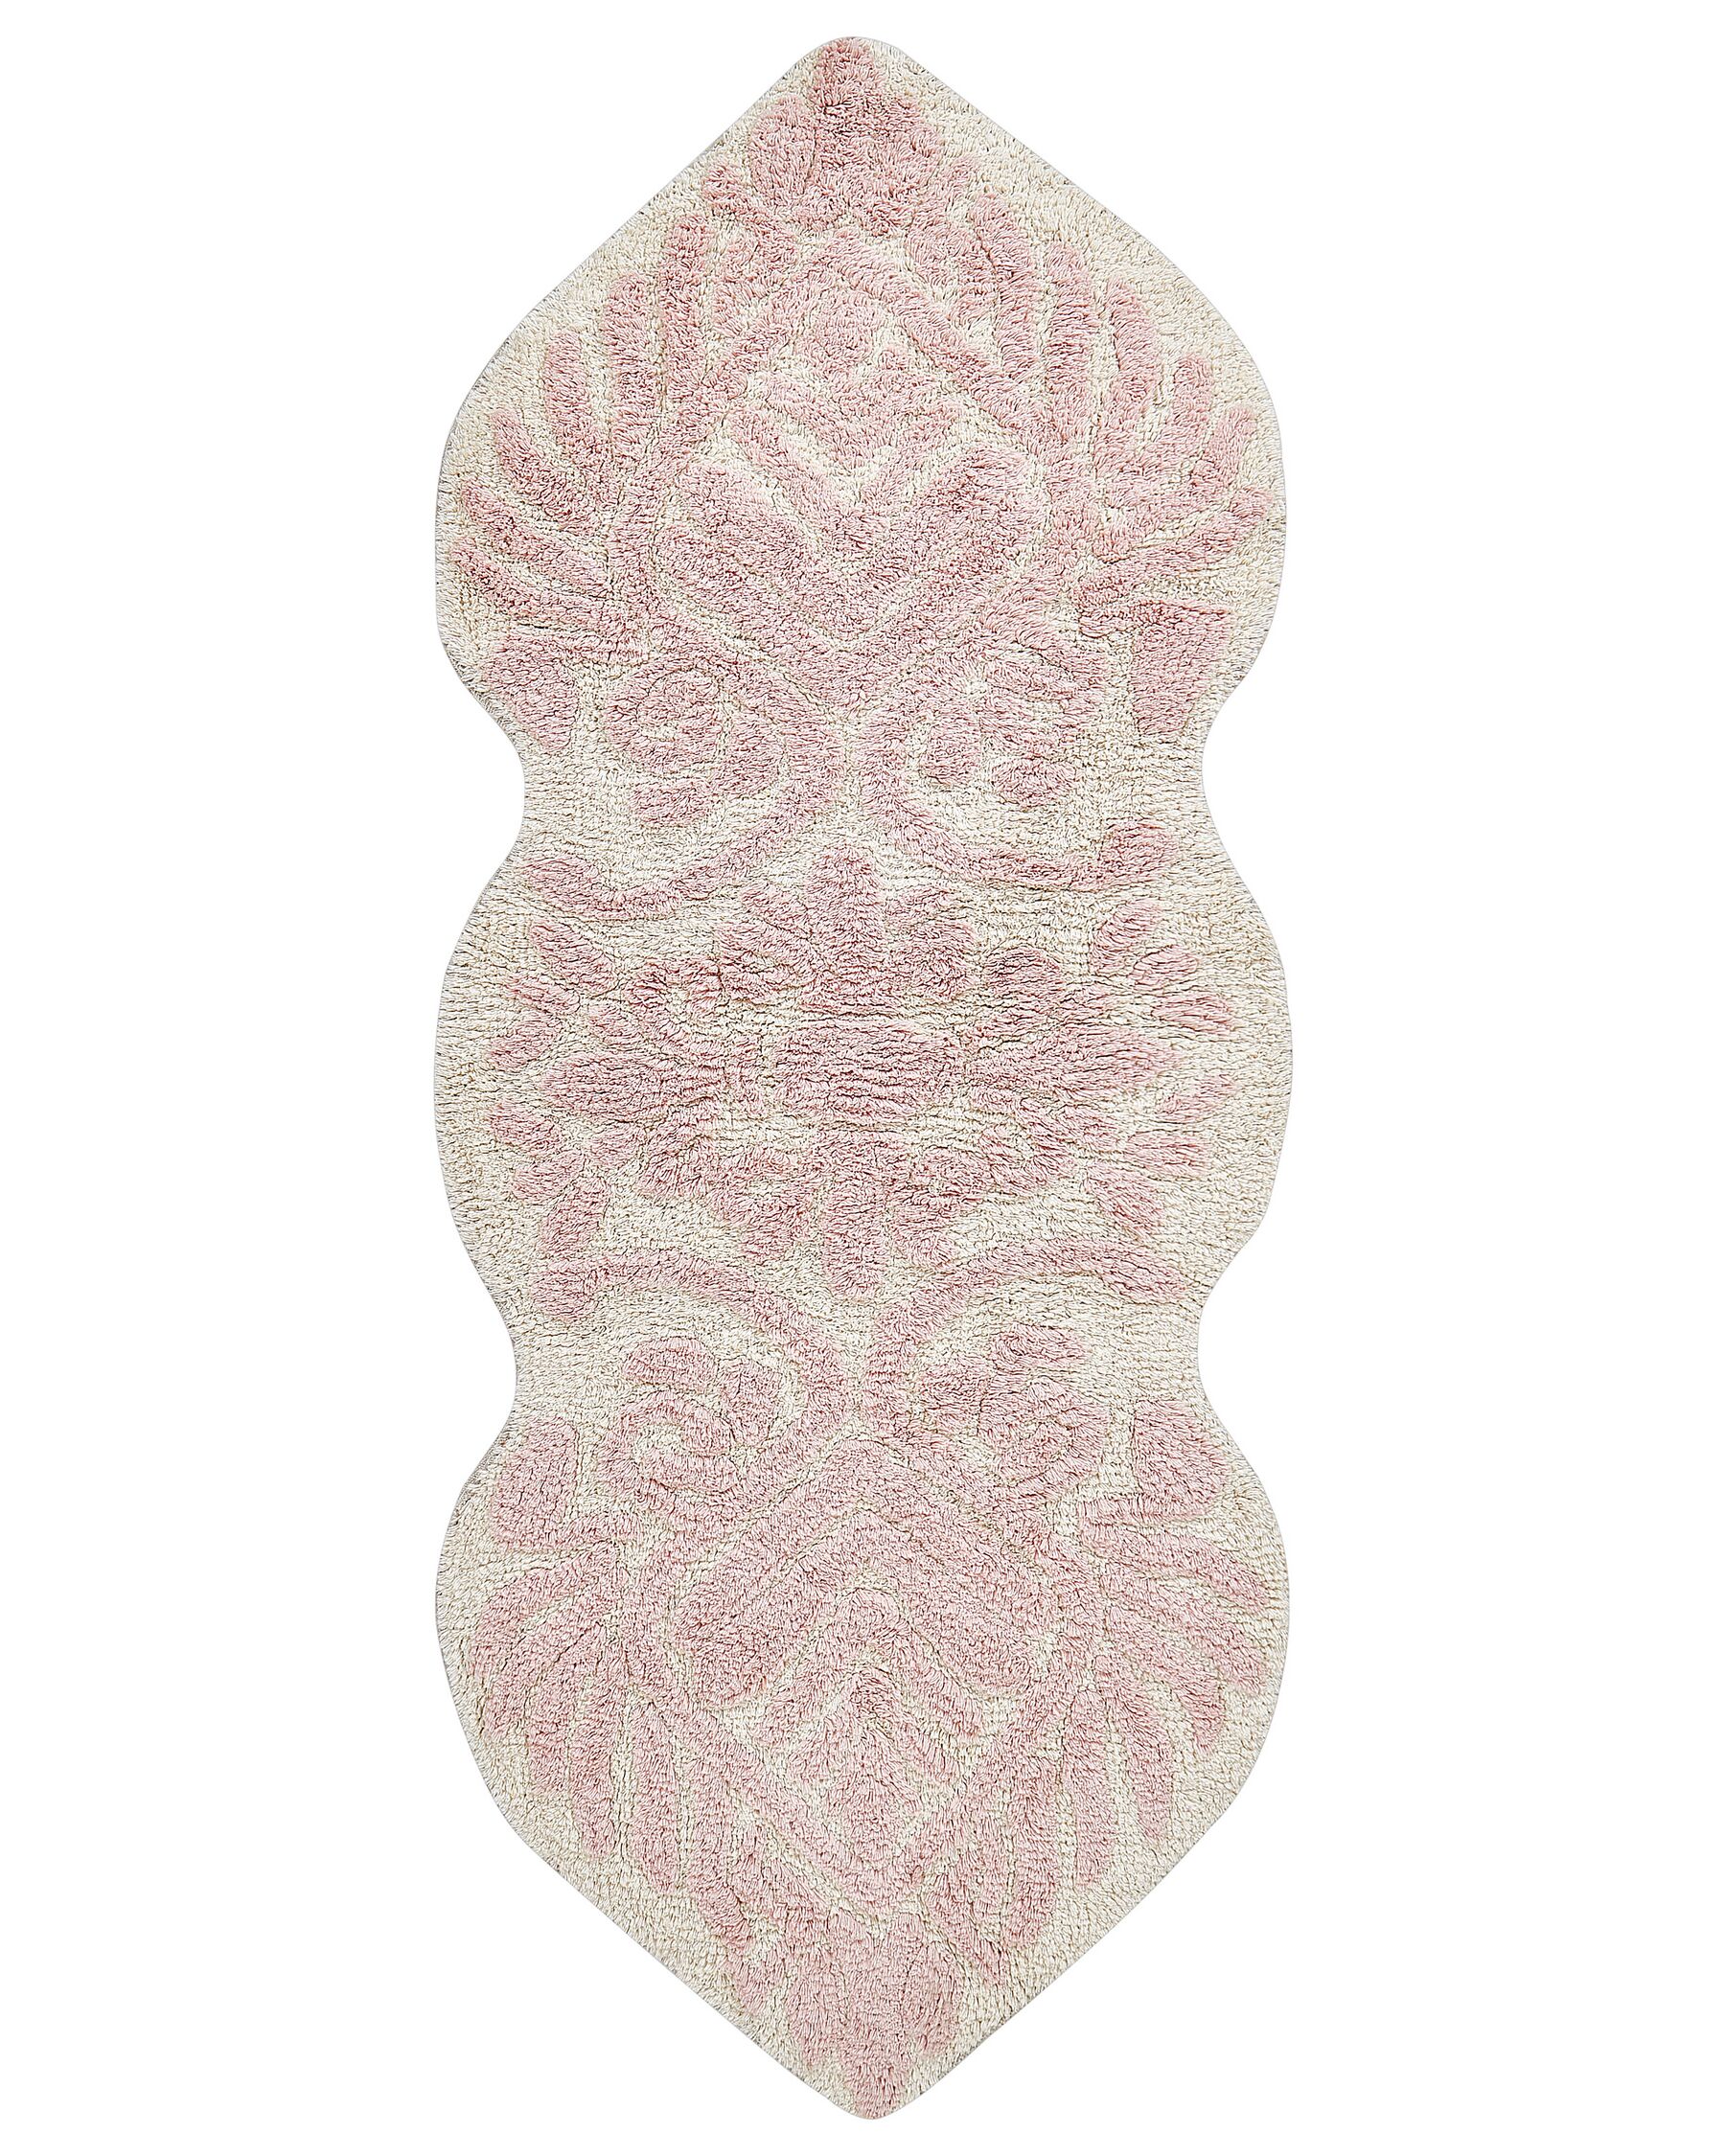 Tapete de casa de banho em algodão rosa 150 x 60 cm CANBAR_905475